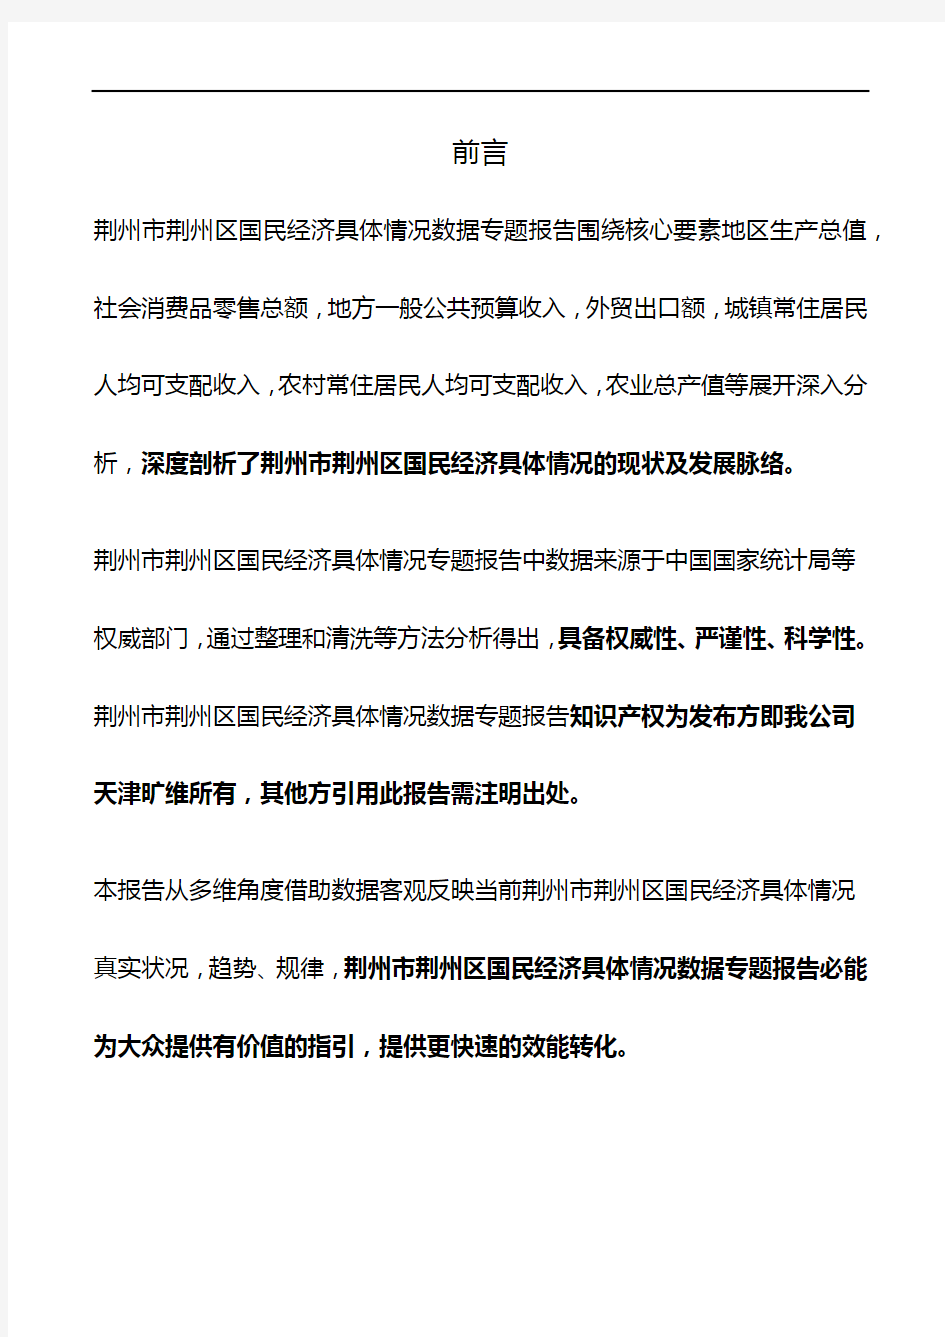 湖北省荆州市荆州区国民经济具体情况3年数据专题报告2020版